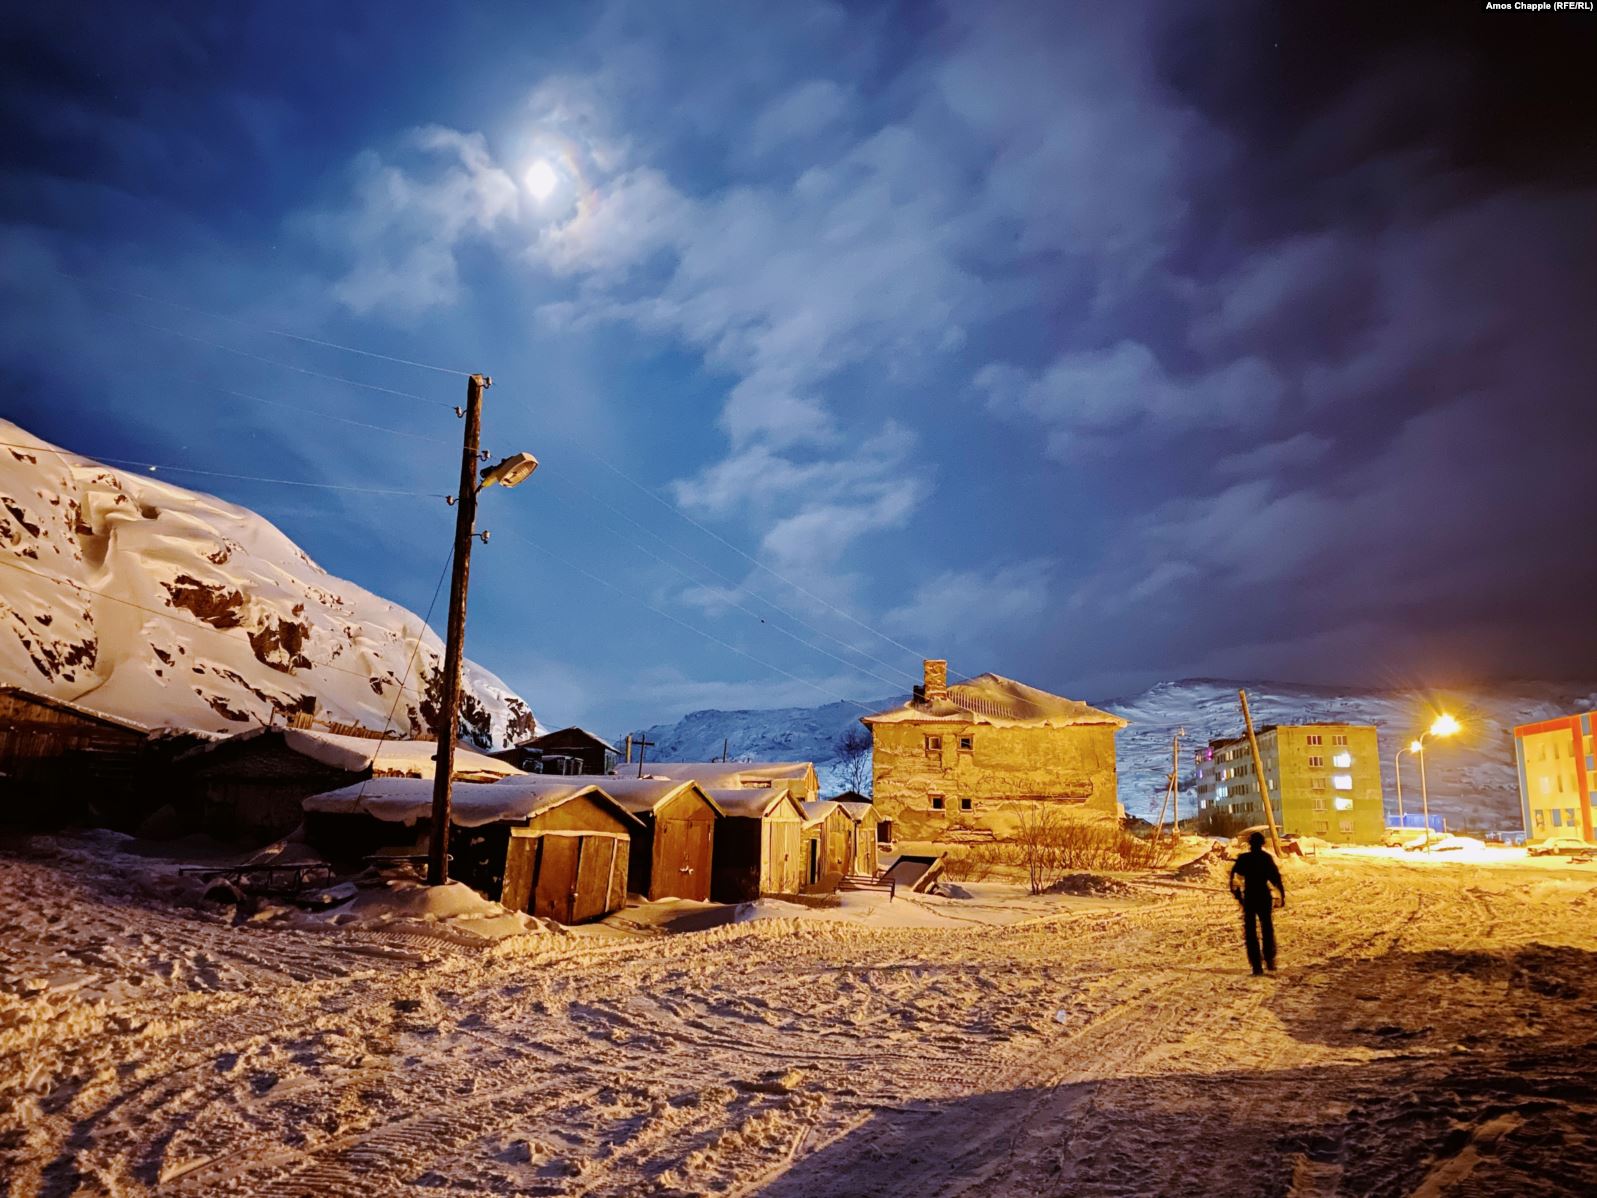 Một nhiếp ảnh gia đã sử dụng Night Mode trên iPhone 11 Pro để thu giữ những đêm tuyệt đẹp từ Nga